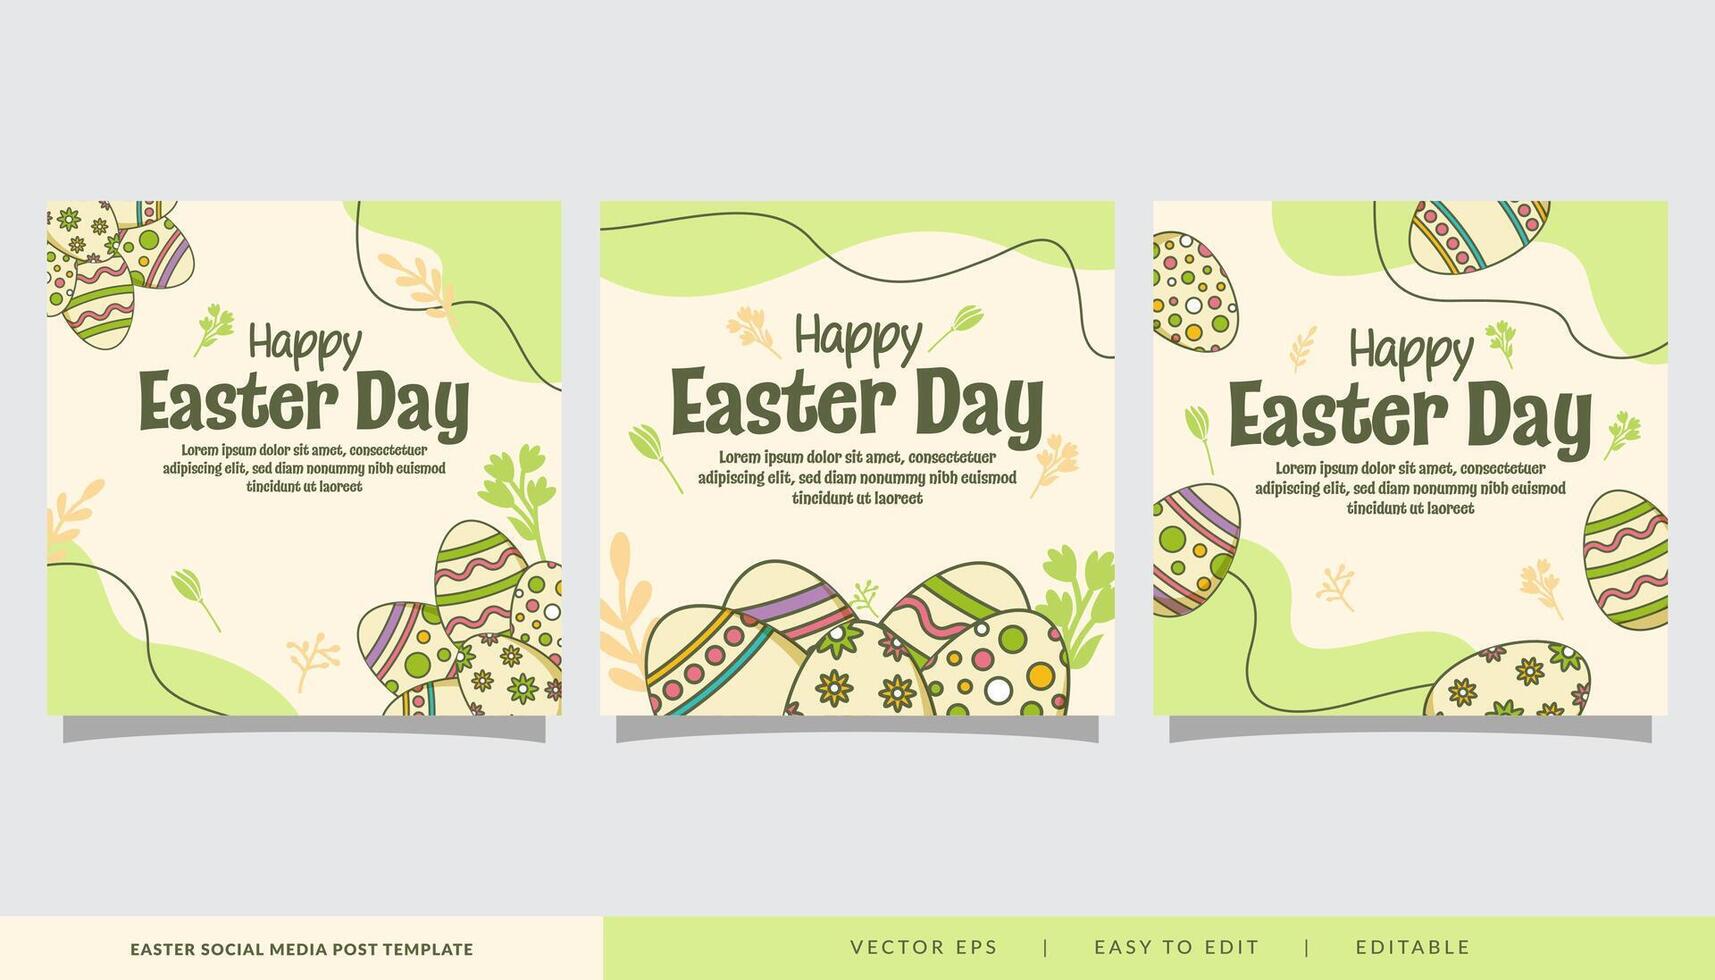 Pascua de Resurrección día ilustración para social medios de comunicación enviar promoción conjunto en garabatear estilo vector